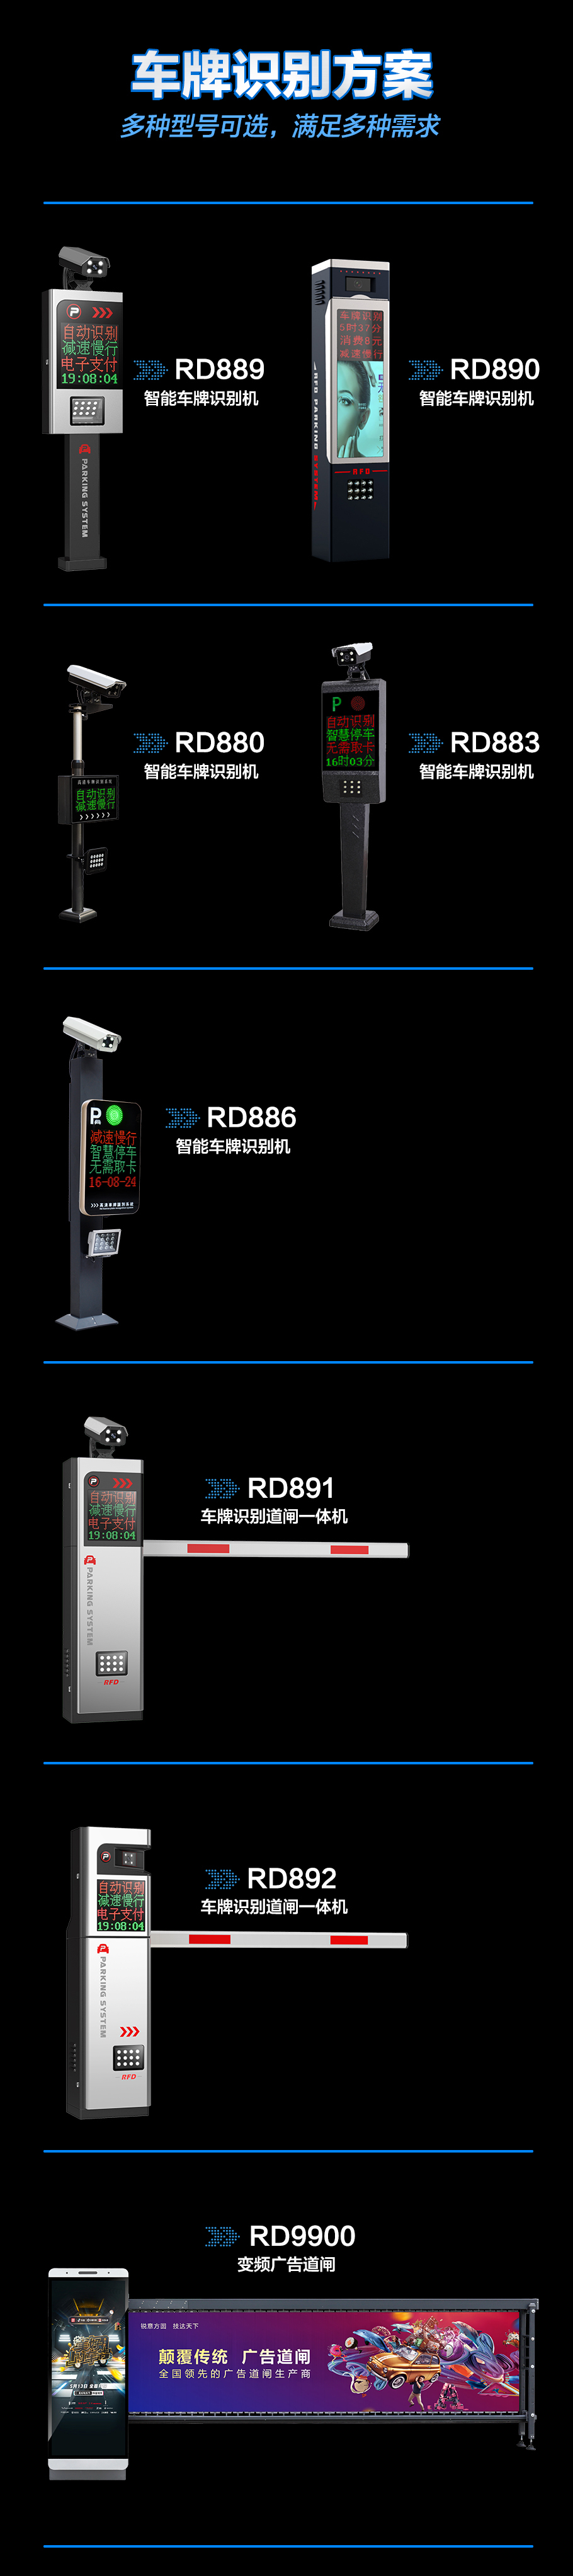 RD890车牌识别系统一体机